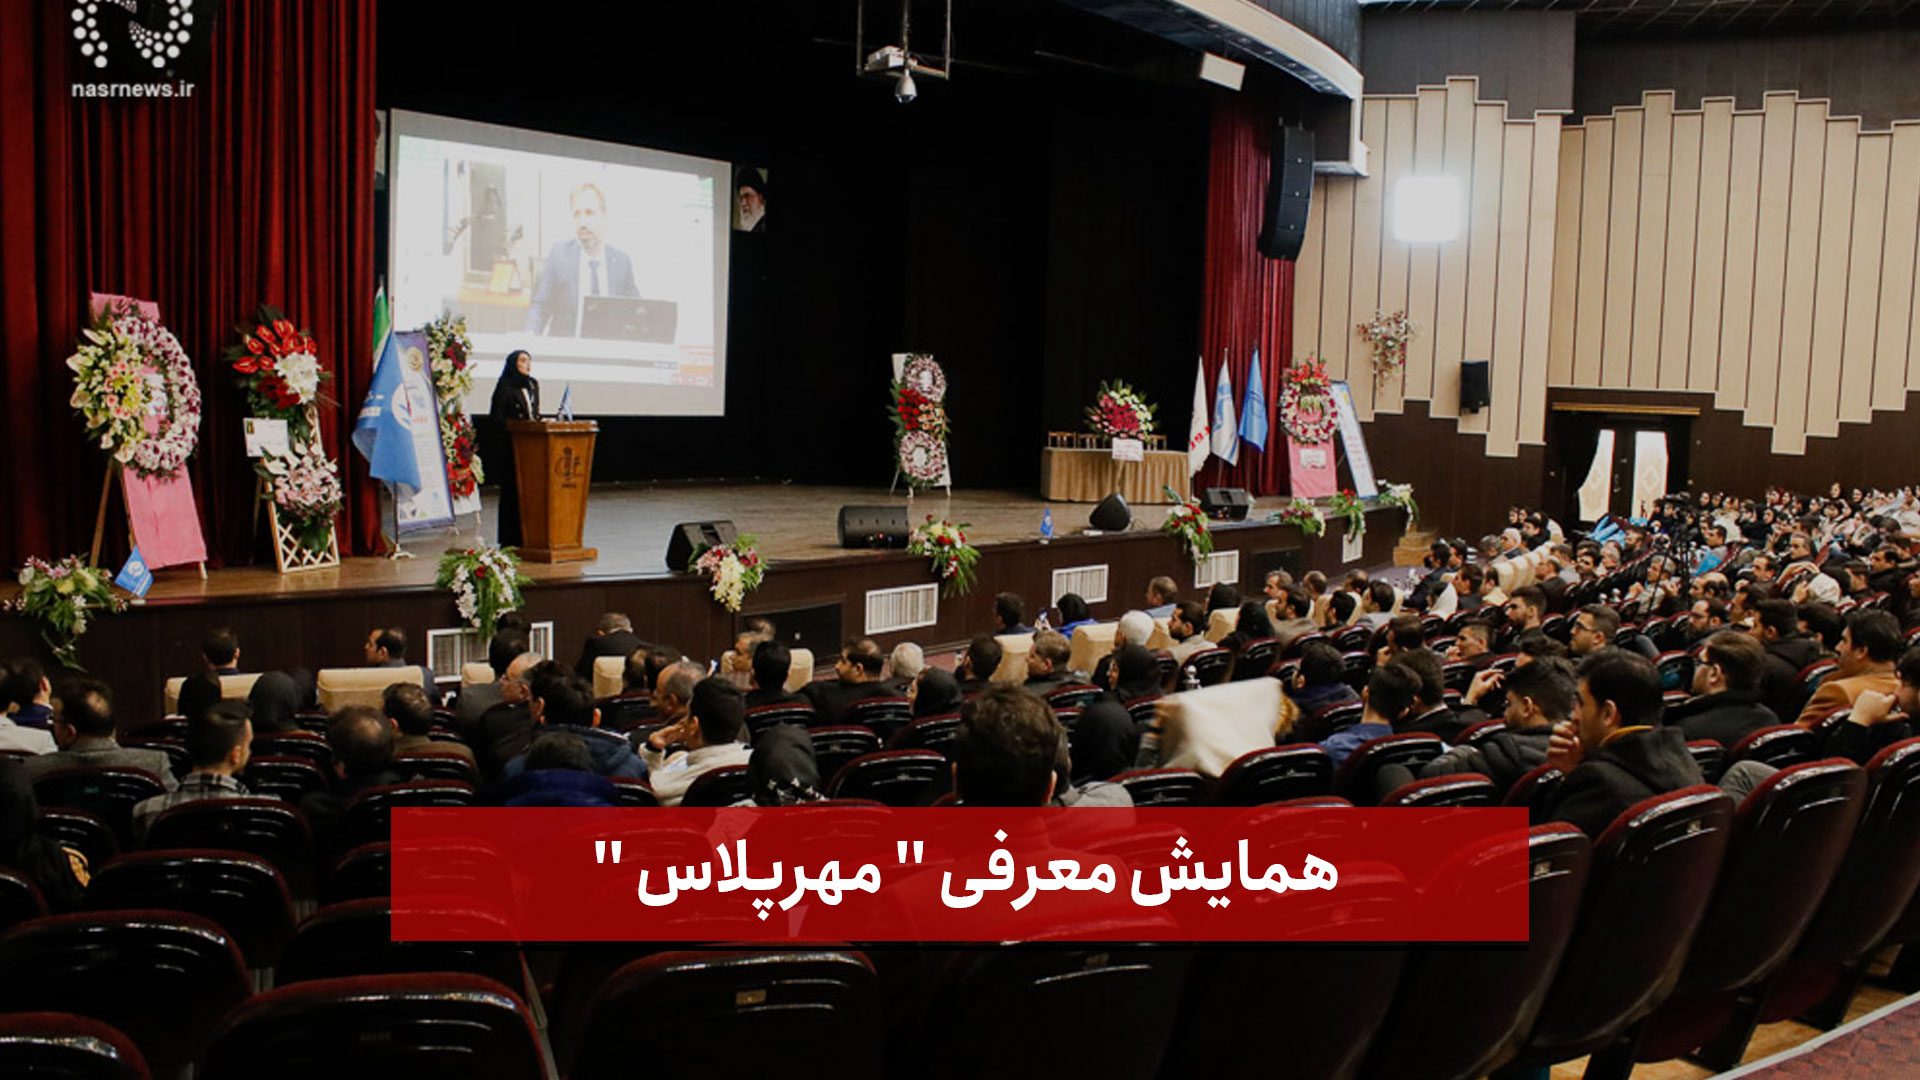 فیلم |  همایش معرفی  مهرپلاس  در تالار وحدت دانشگاه تبریز